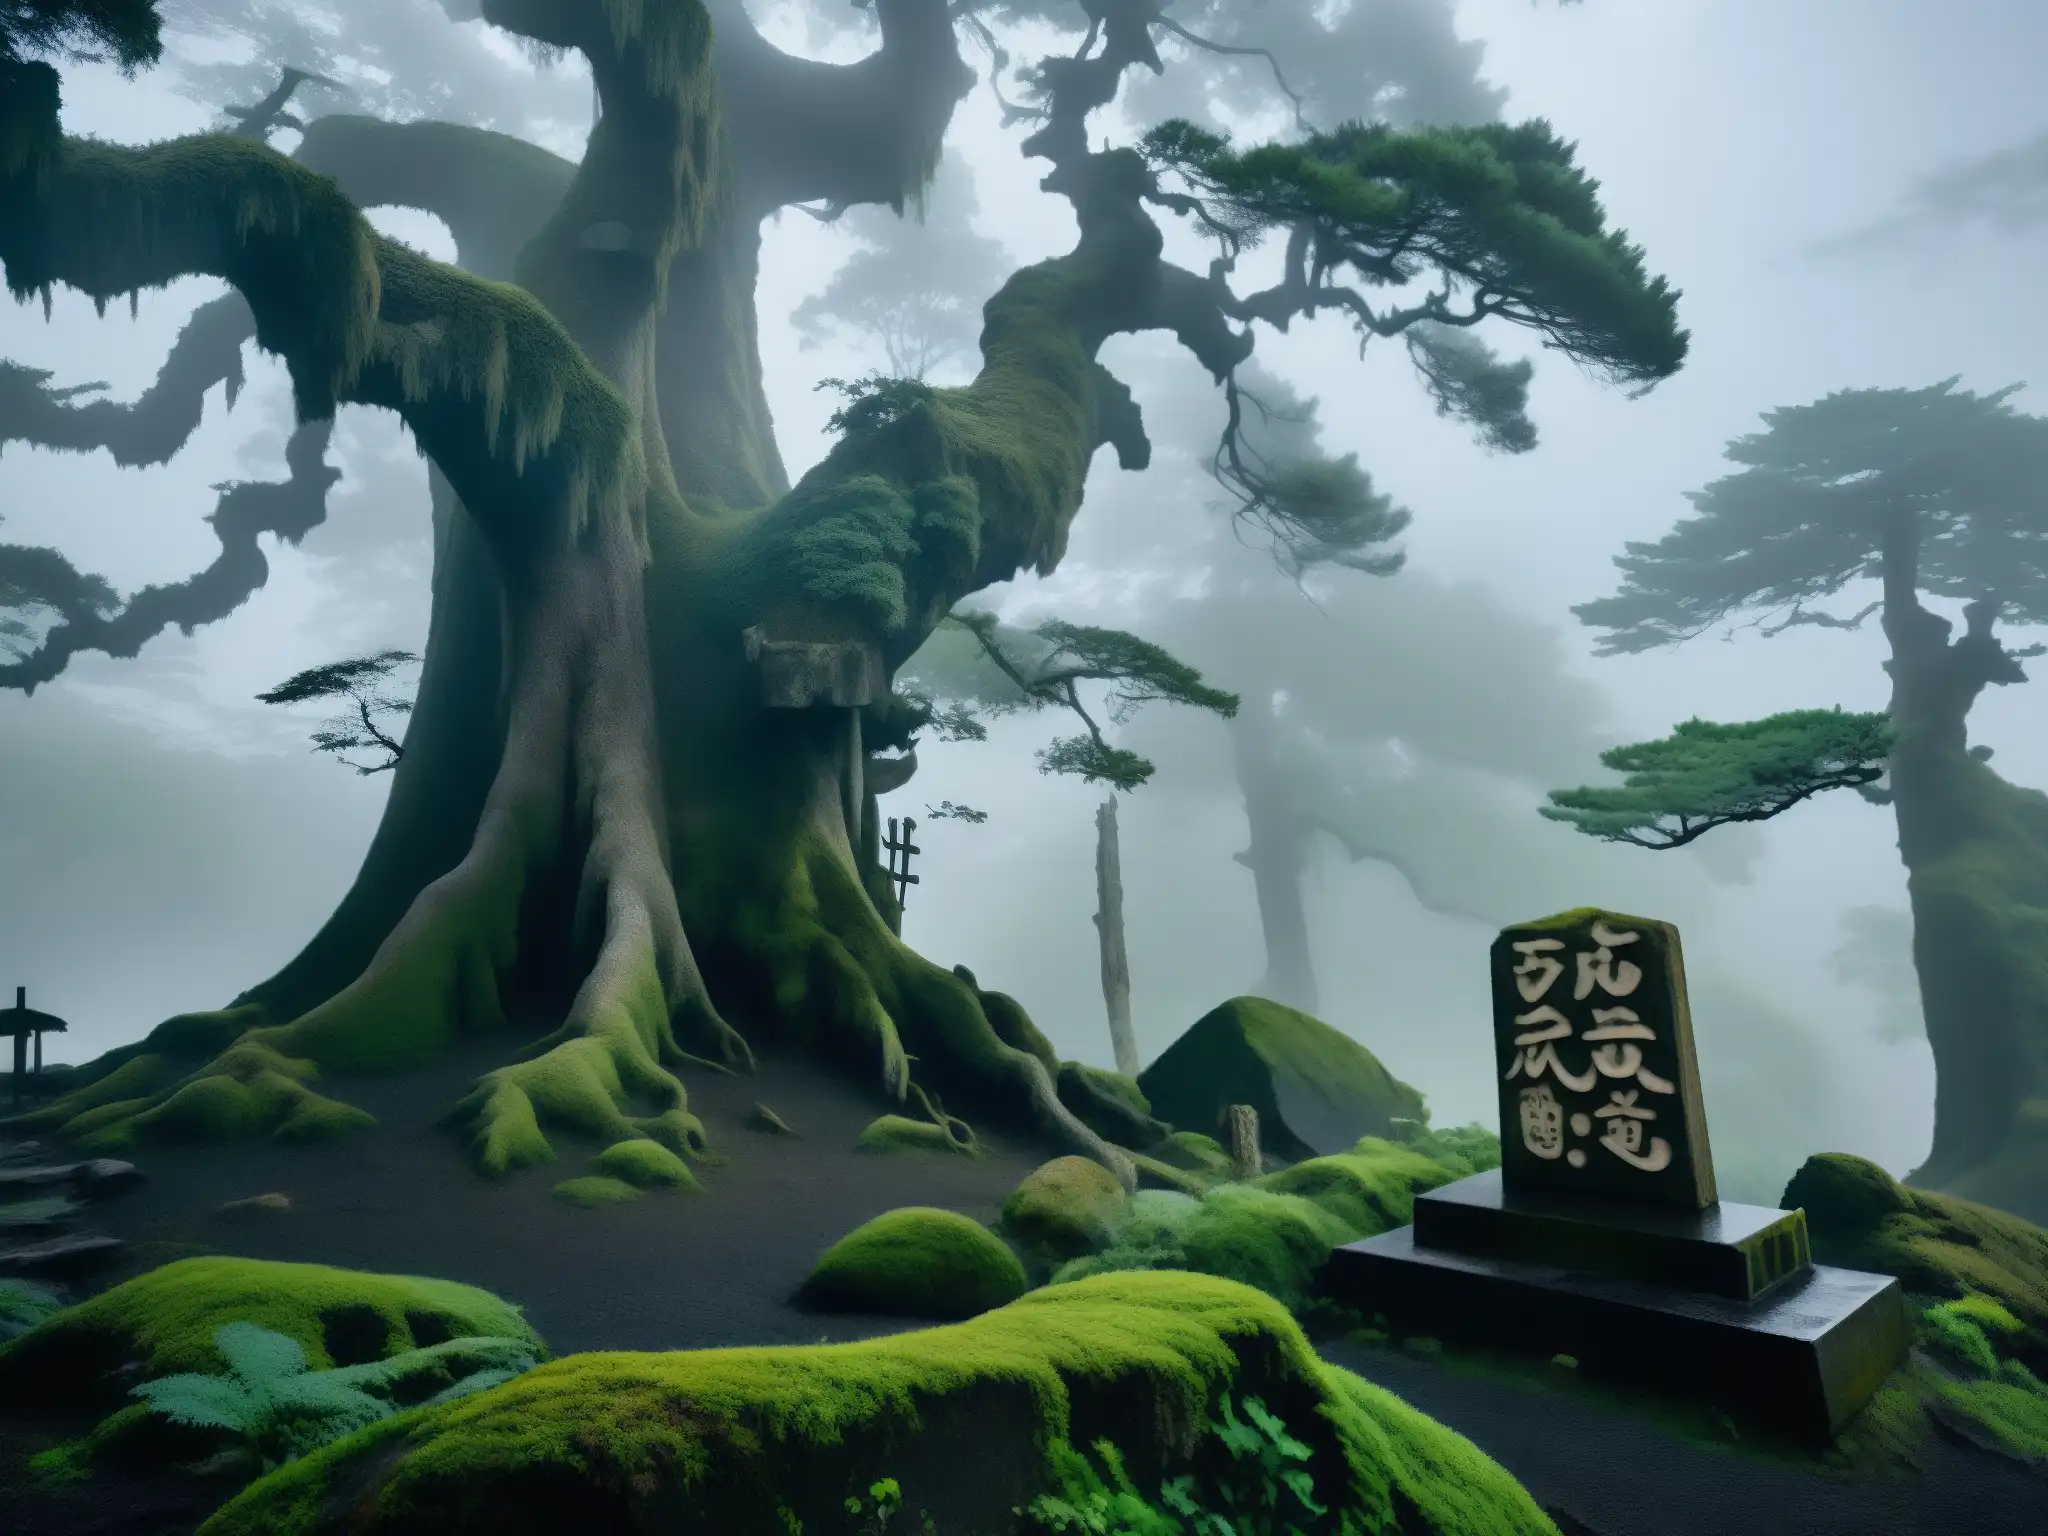 Un bosque oscuro y brumoso en Japón, con árboles antiguos y retorcidos